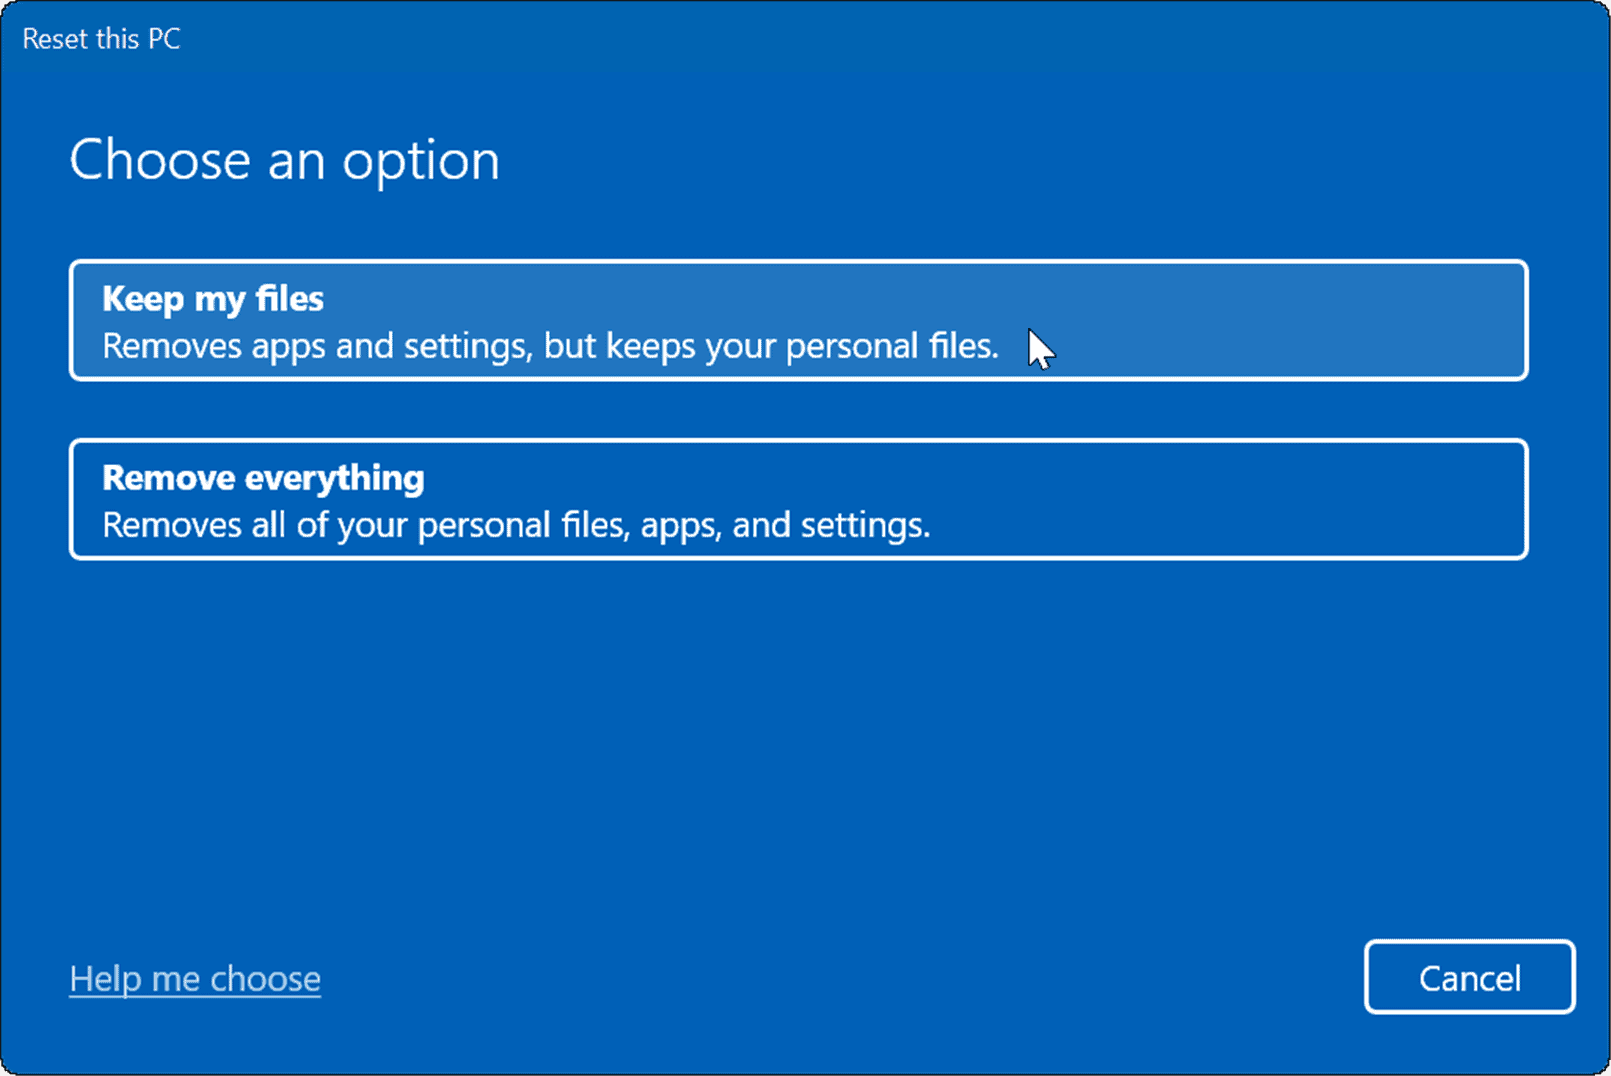 Защита ресурсов Windows обнаружила поврежденные файлы